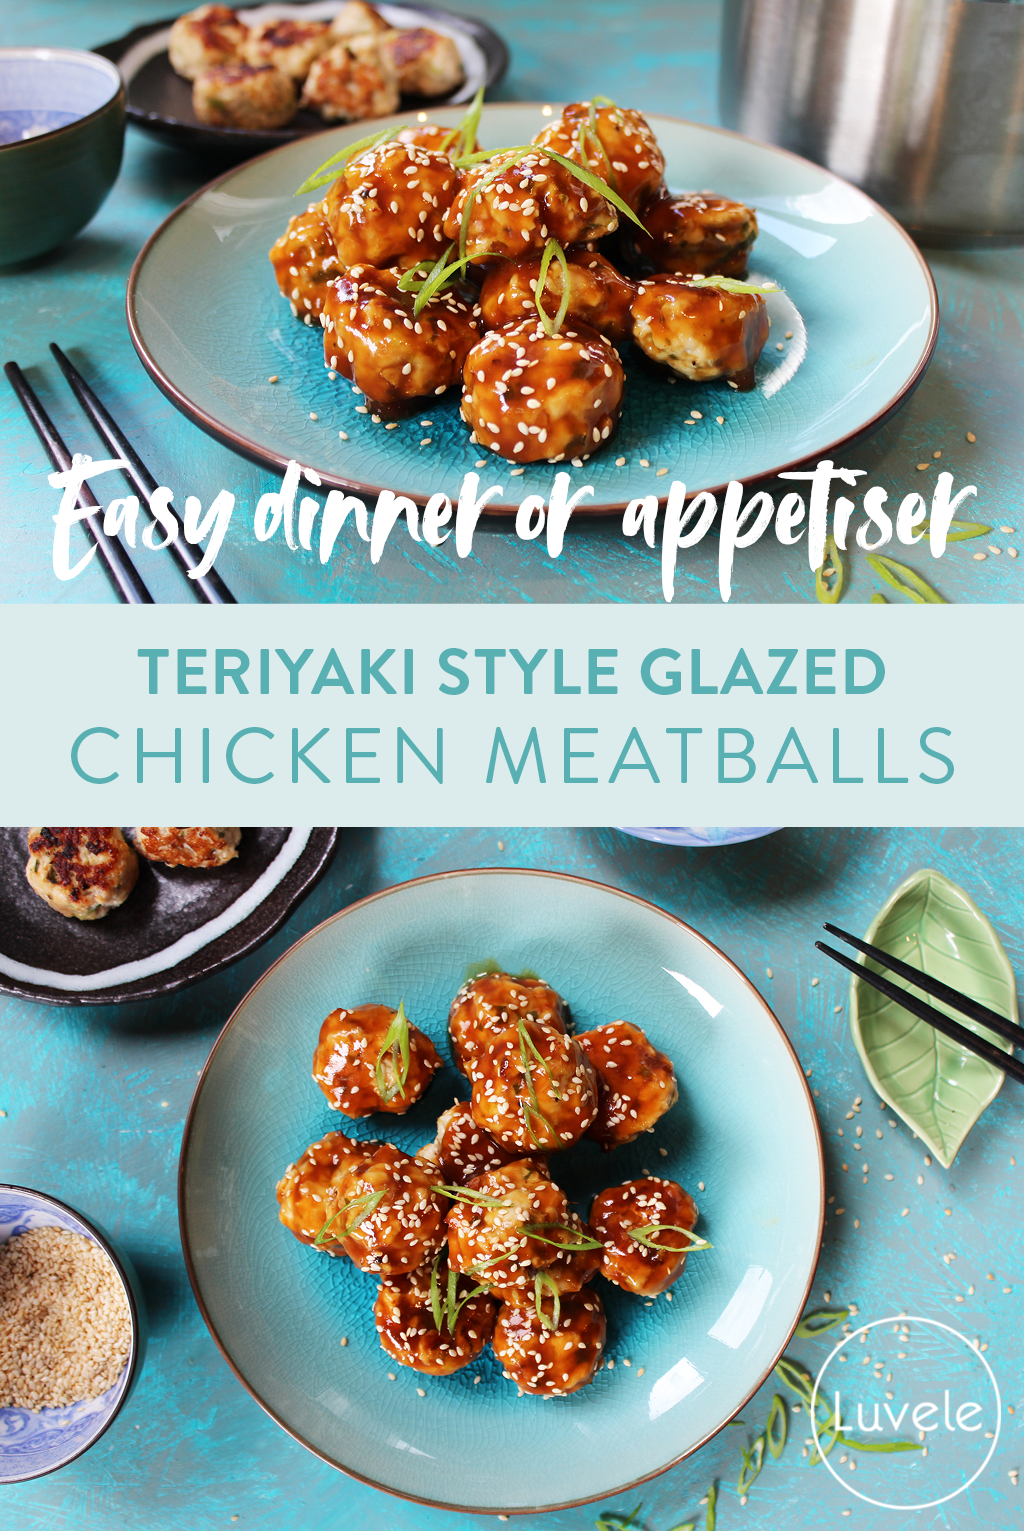 teriyaki meatballs